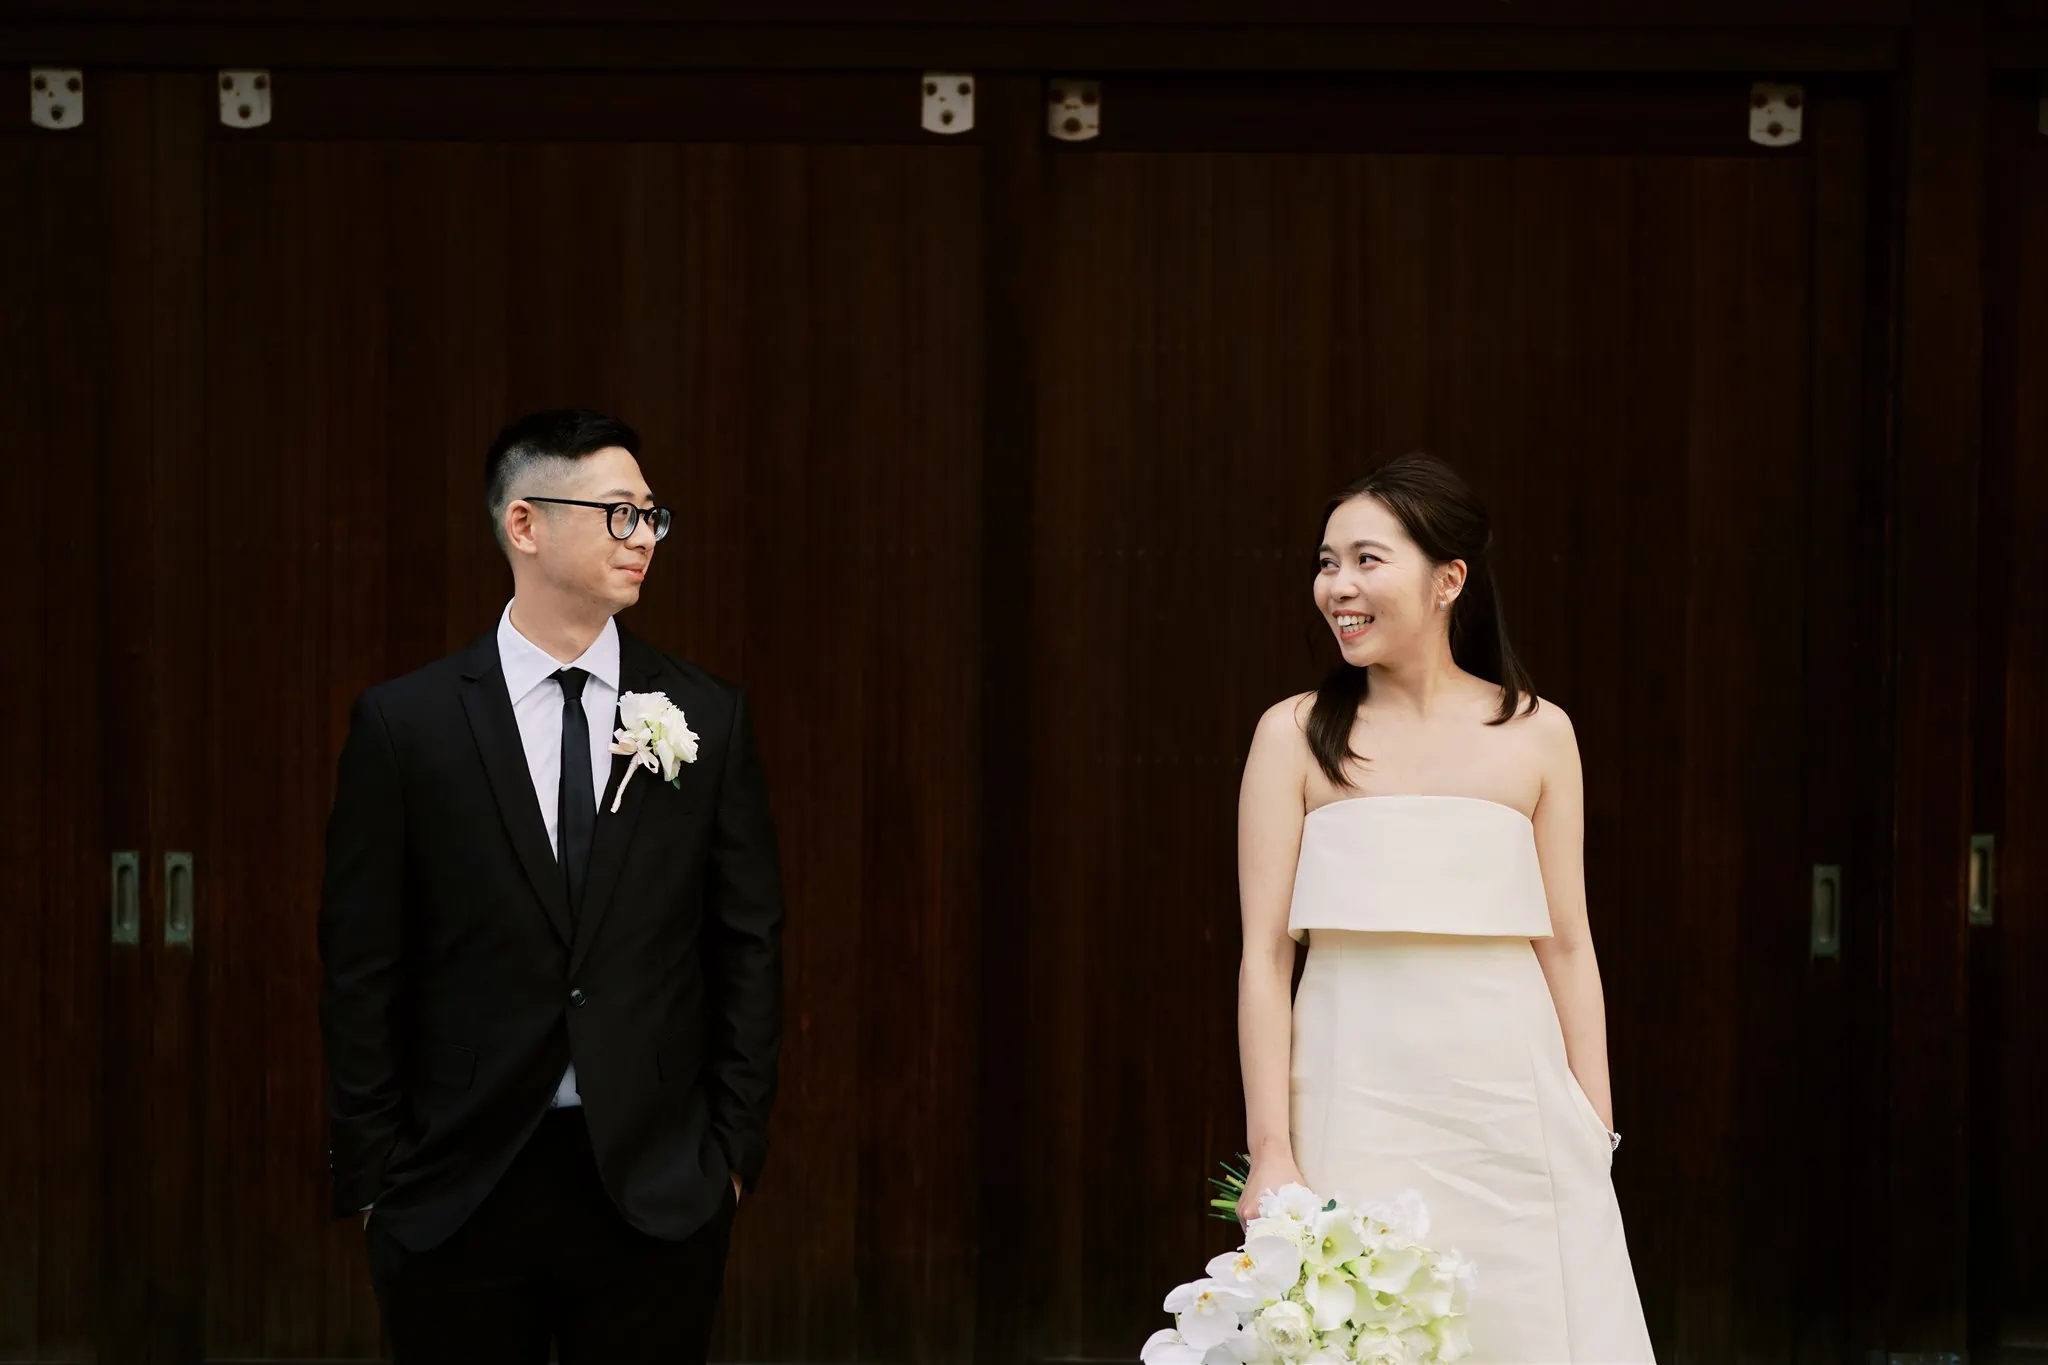 Kyoto Tokyo Japan Elopement Wedding Photographer, Planner & Videographer | A Japan elopement - a bride and groom standing in front of a wooden door.